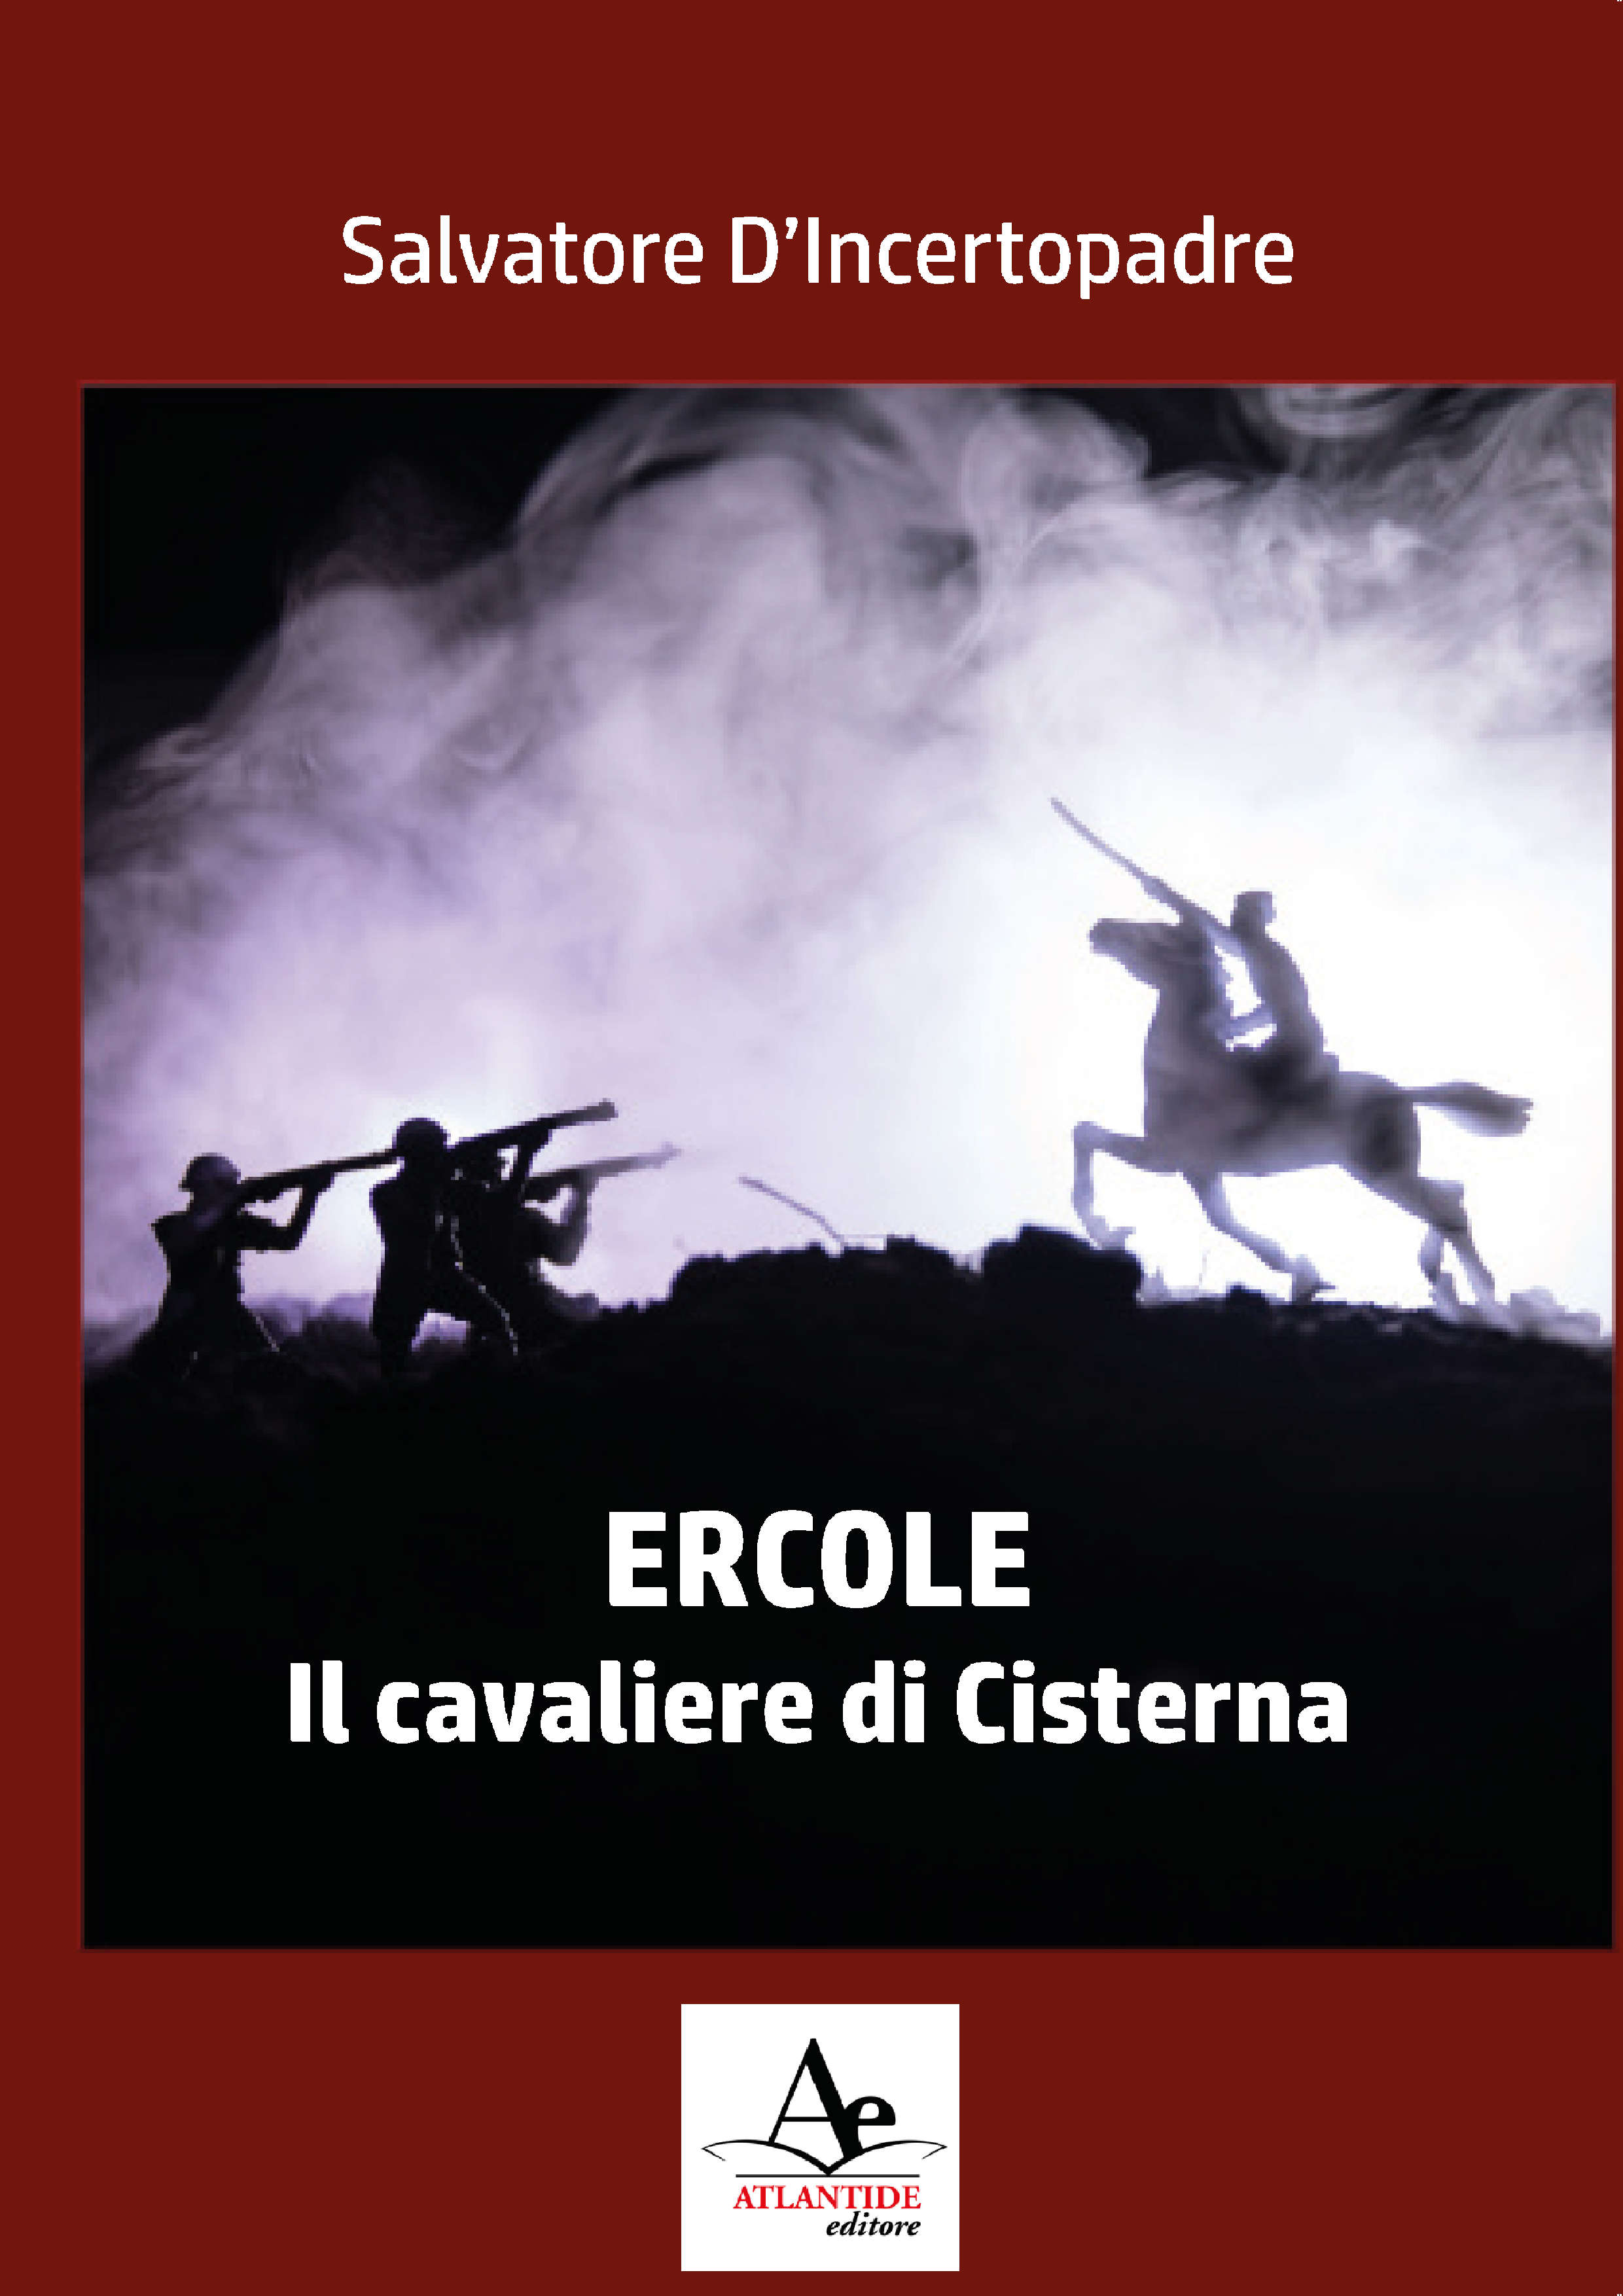 “Libri al Centro” presenta: “Ercole, il Cavaliere di Cisterna” di Salvatore D’Incertopadre